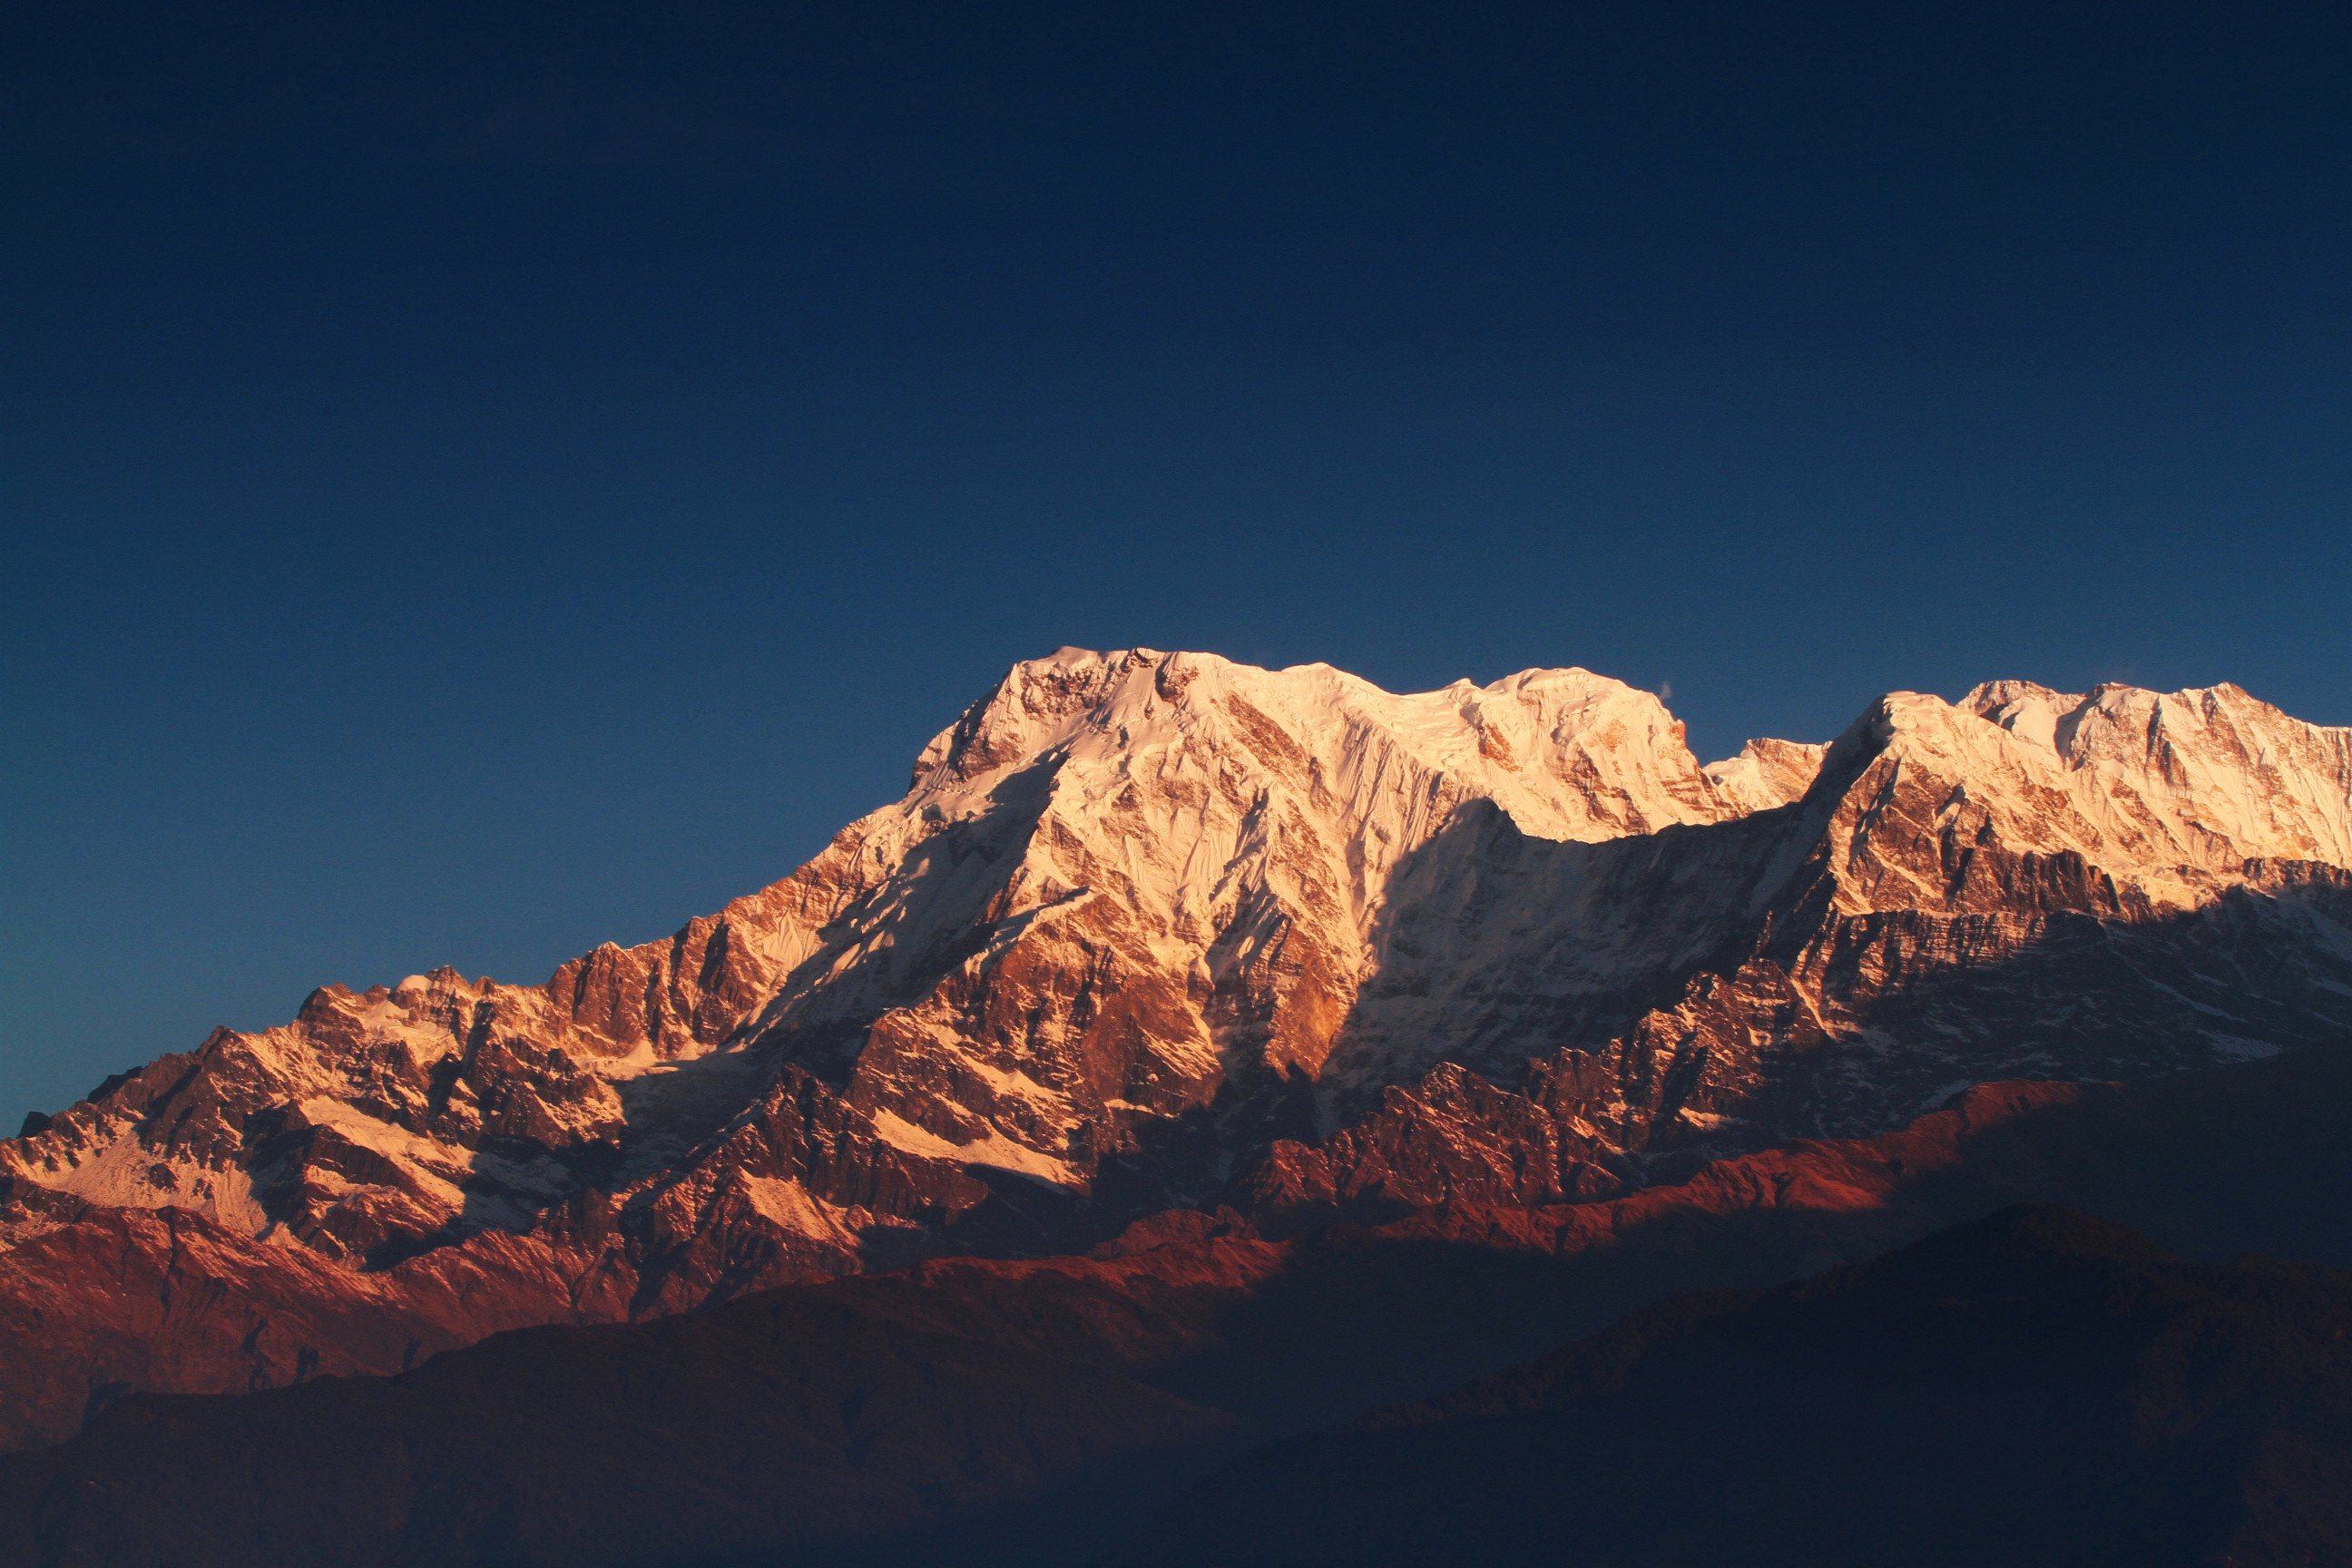 Langtang谷森林和河风景在尼泊尔 库存图片. 图片 包括有 范围, 喜马拉雅山, 环境, 尼泊尔, 冒险家 - 88317753